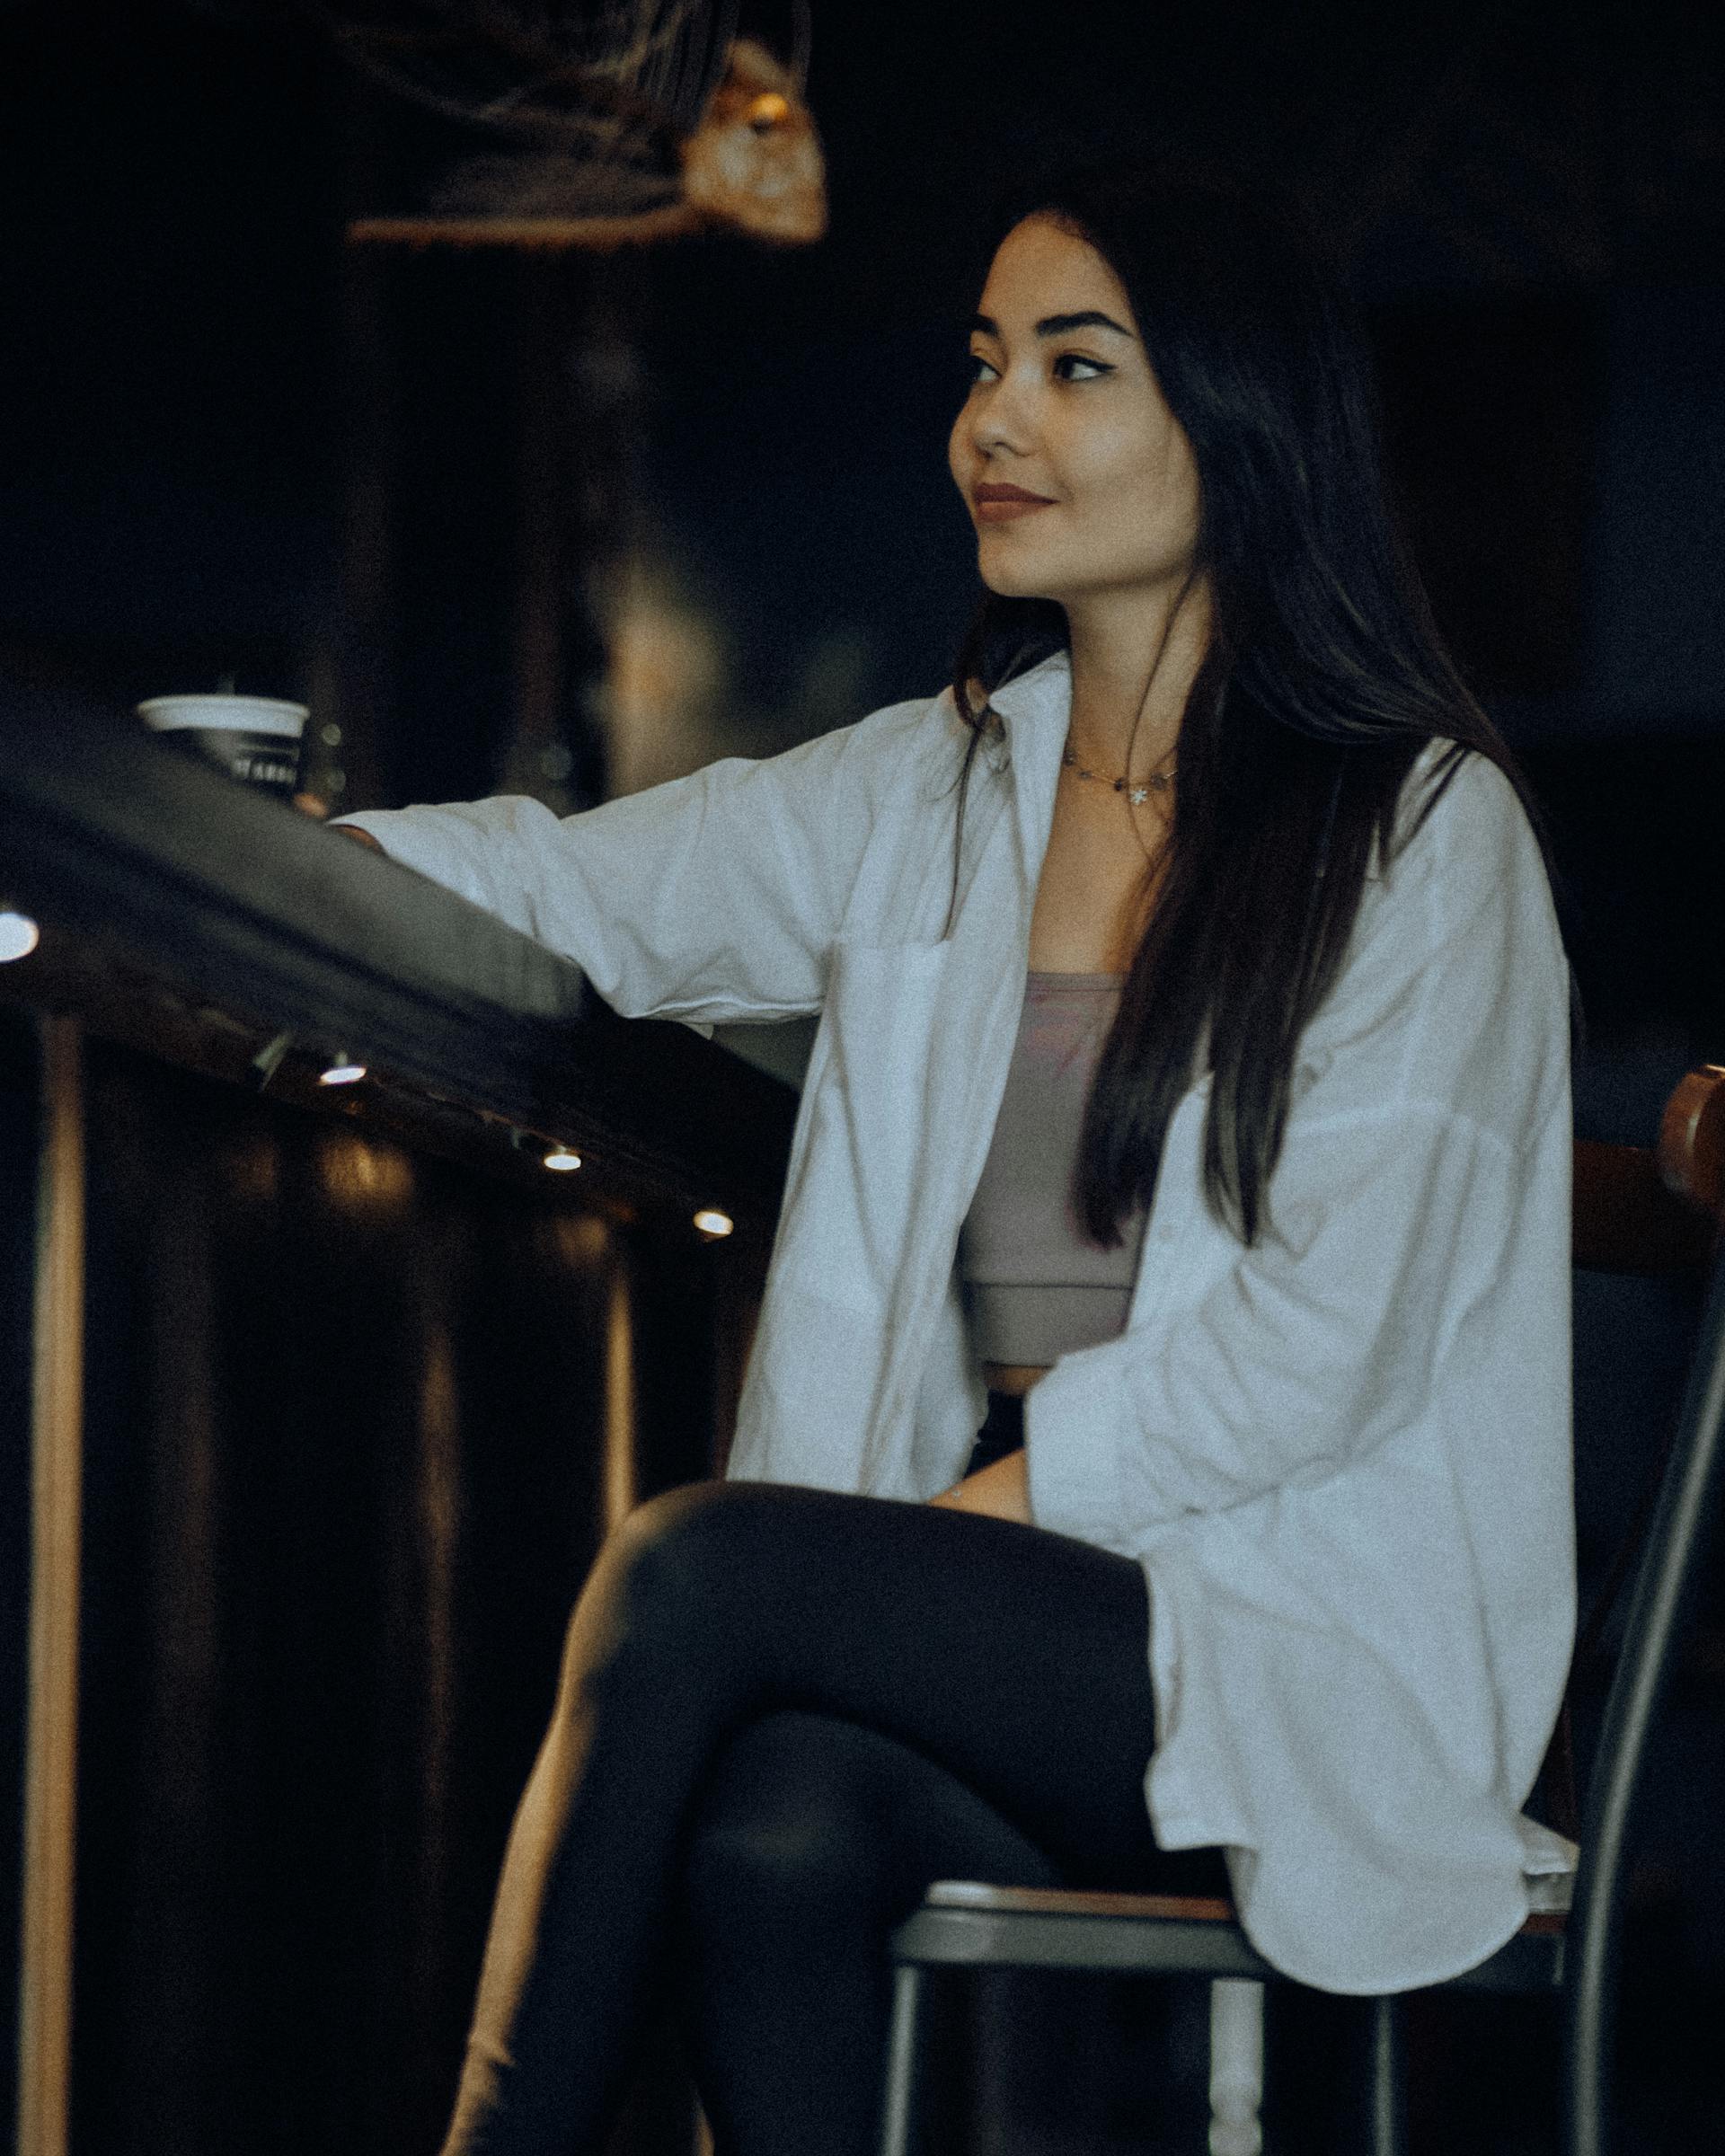 Una mujer sentada en un bar | Foto: Pexels